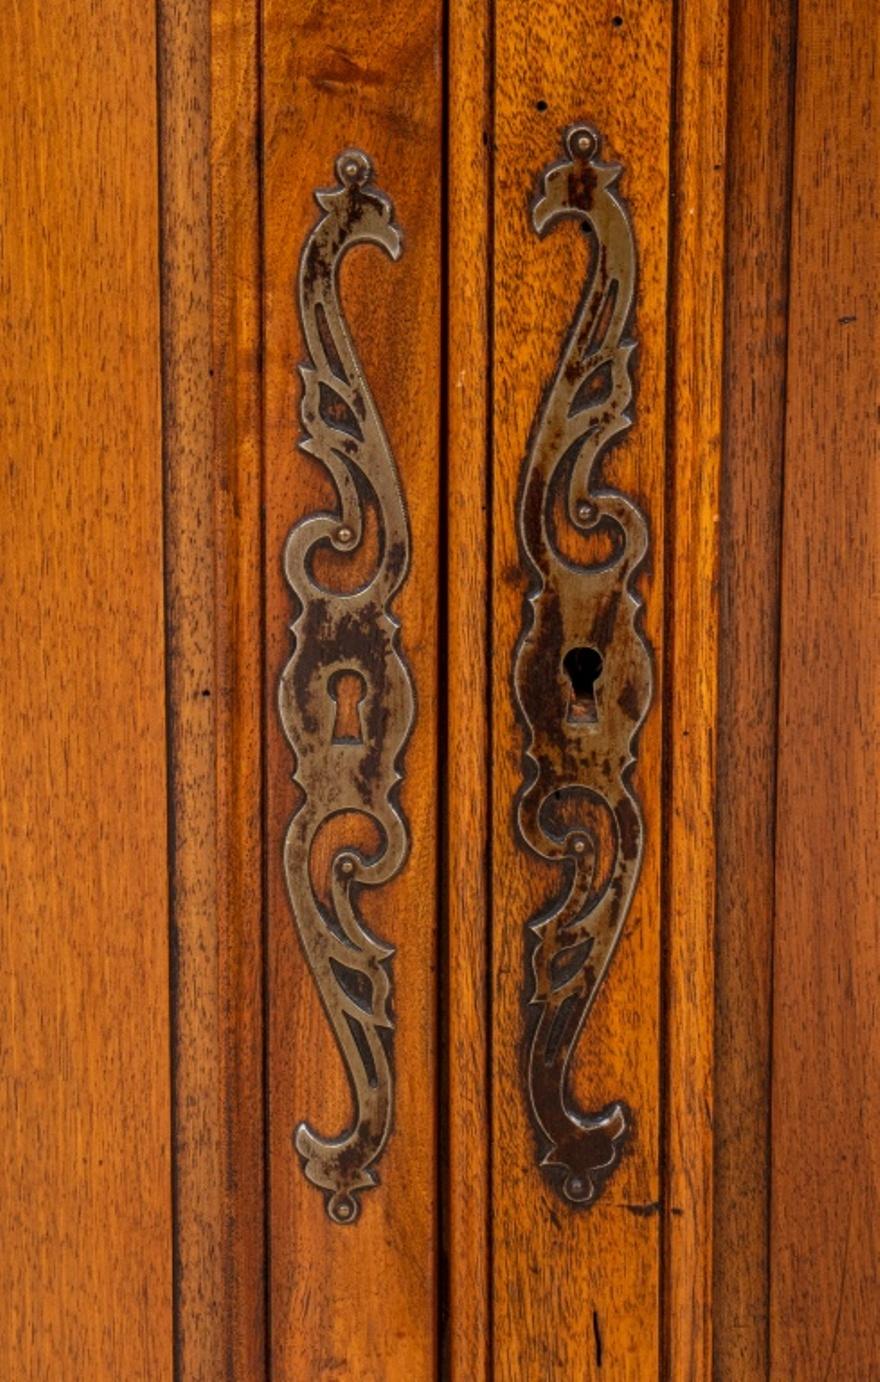 Armoire d'angle ou encoignure en chêne sculpté de style provincial Louis XV, une porte à panneaux incurvés, reposant sur des pieds cabriole, plaque du fabricant français à l'arrière.

Distributeur : S138XX.